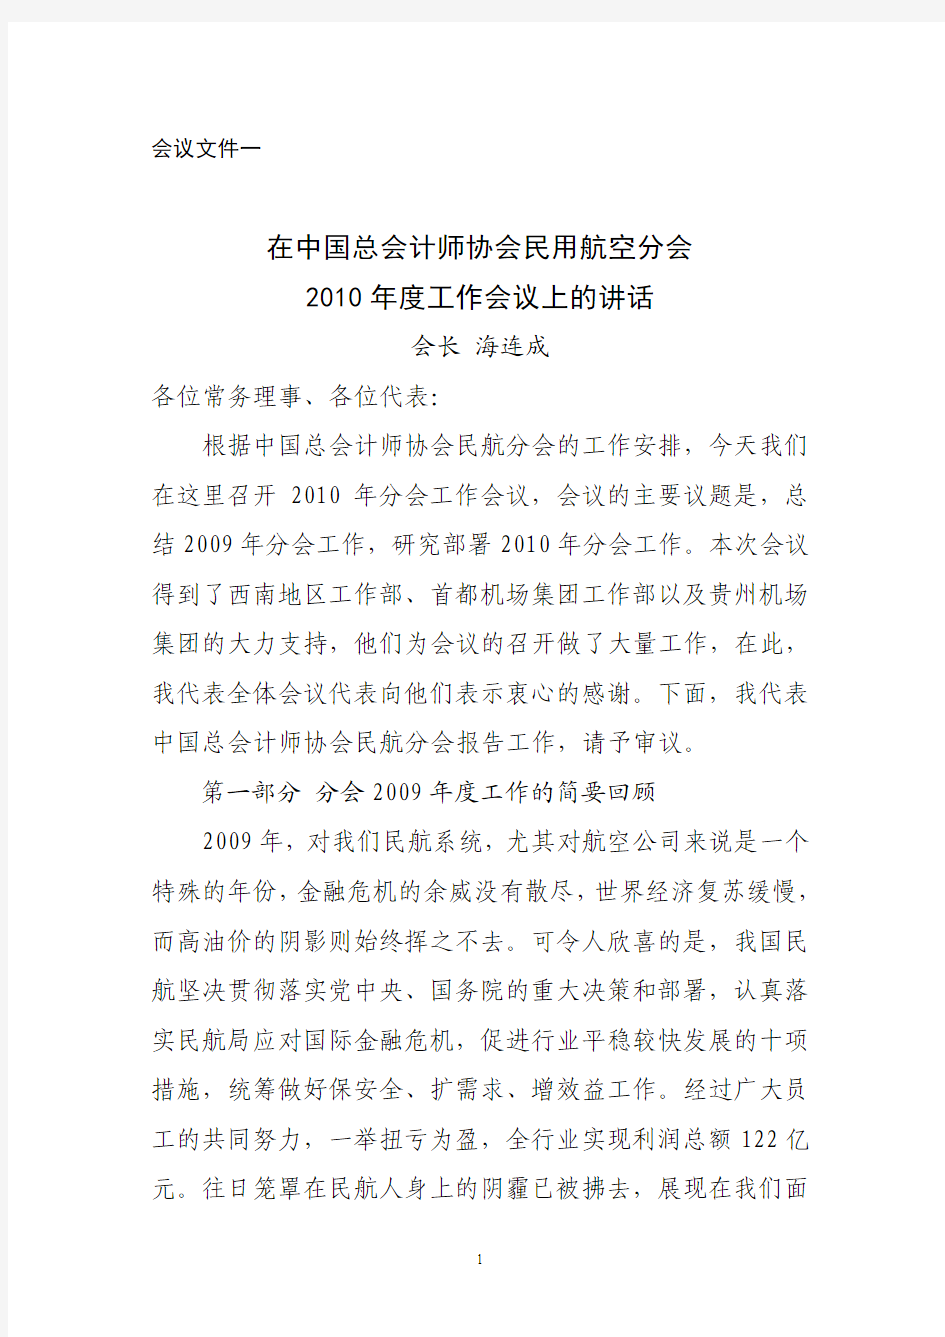 会议文件一在中国总会计师协会民用航空分会2010年度工作会议上的讲话